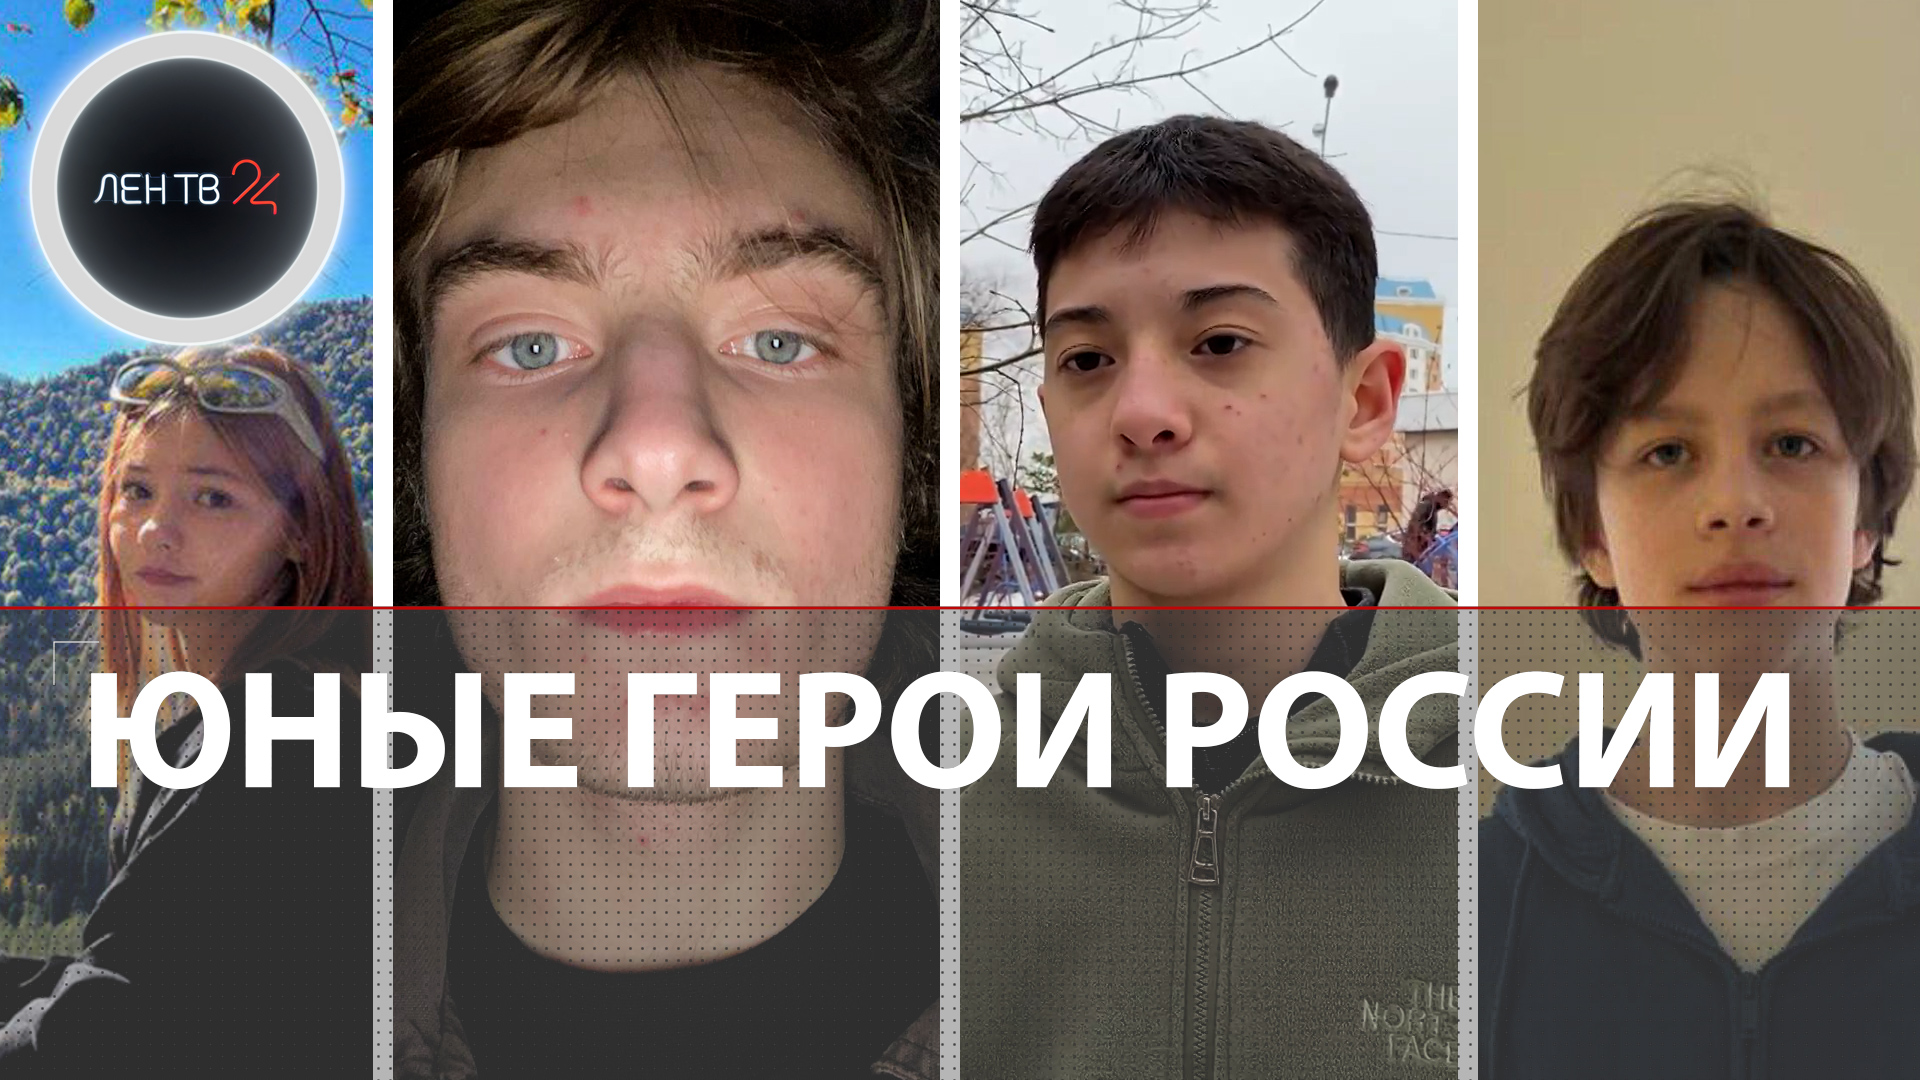 Как школьники-гардеробщики спасли людей в Крокусе | Ислам, Артем, Никита и Вика - юные герои России